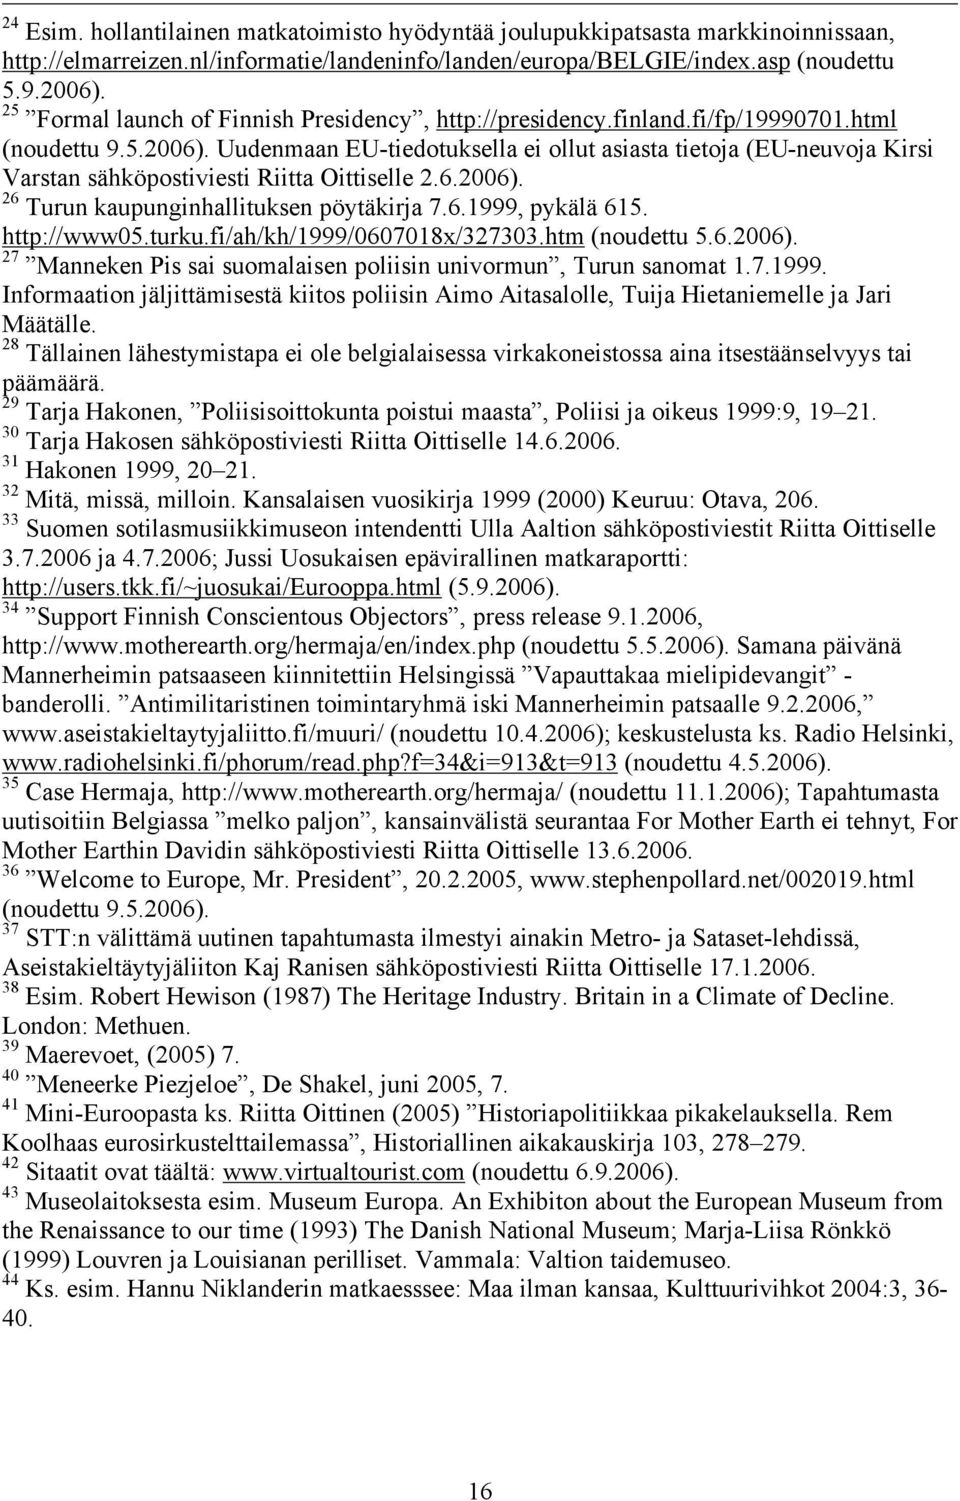 Uudenmaan EU-tiedotuksella ei ollut asiasta tietoja (EU-neuvoja Kirsi Varstan sähköpostiviesti Riitta Oittiselle 2.6.2006). 26 Turun kaupunginhallituksen pöytäkirja 7.6.1999, pykälä 615. http://www05.